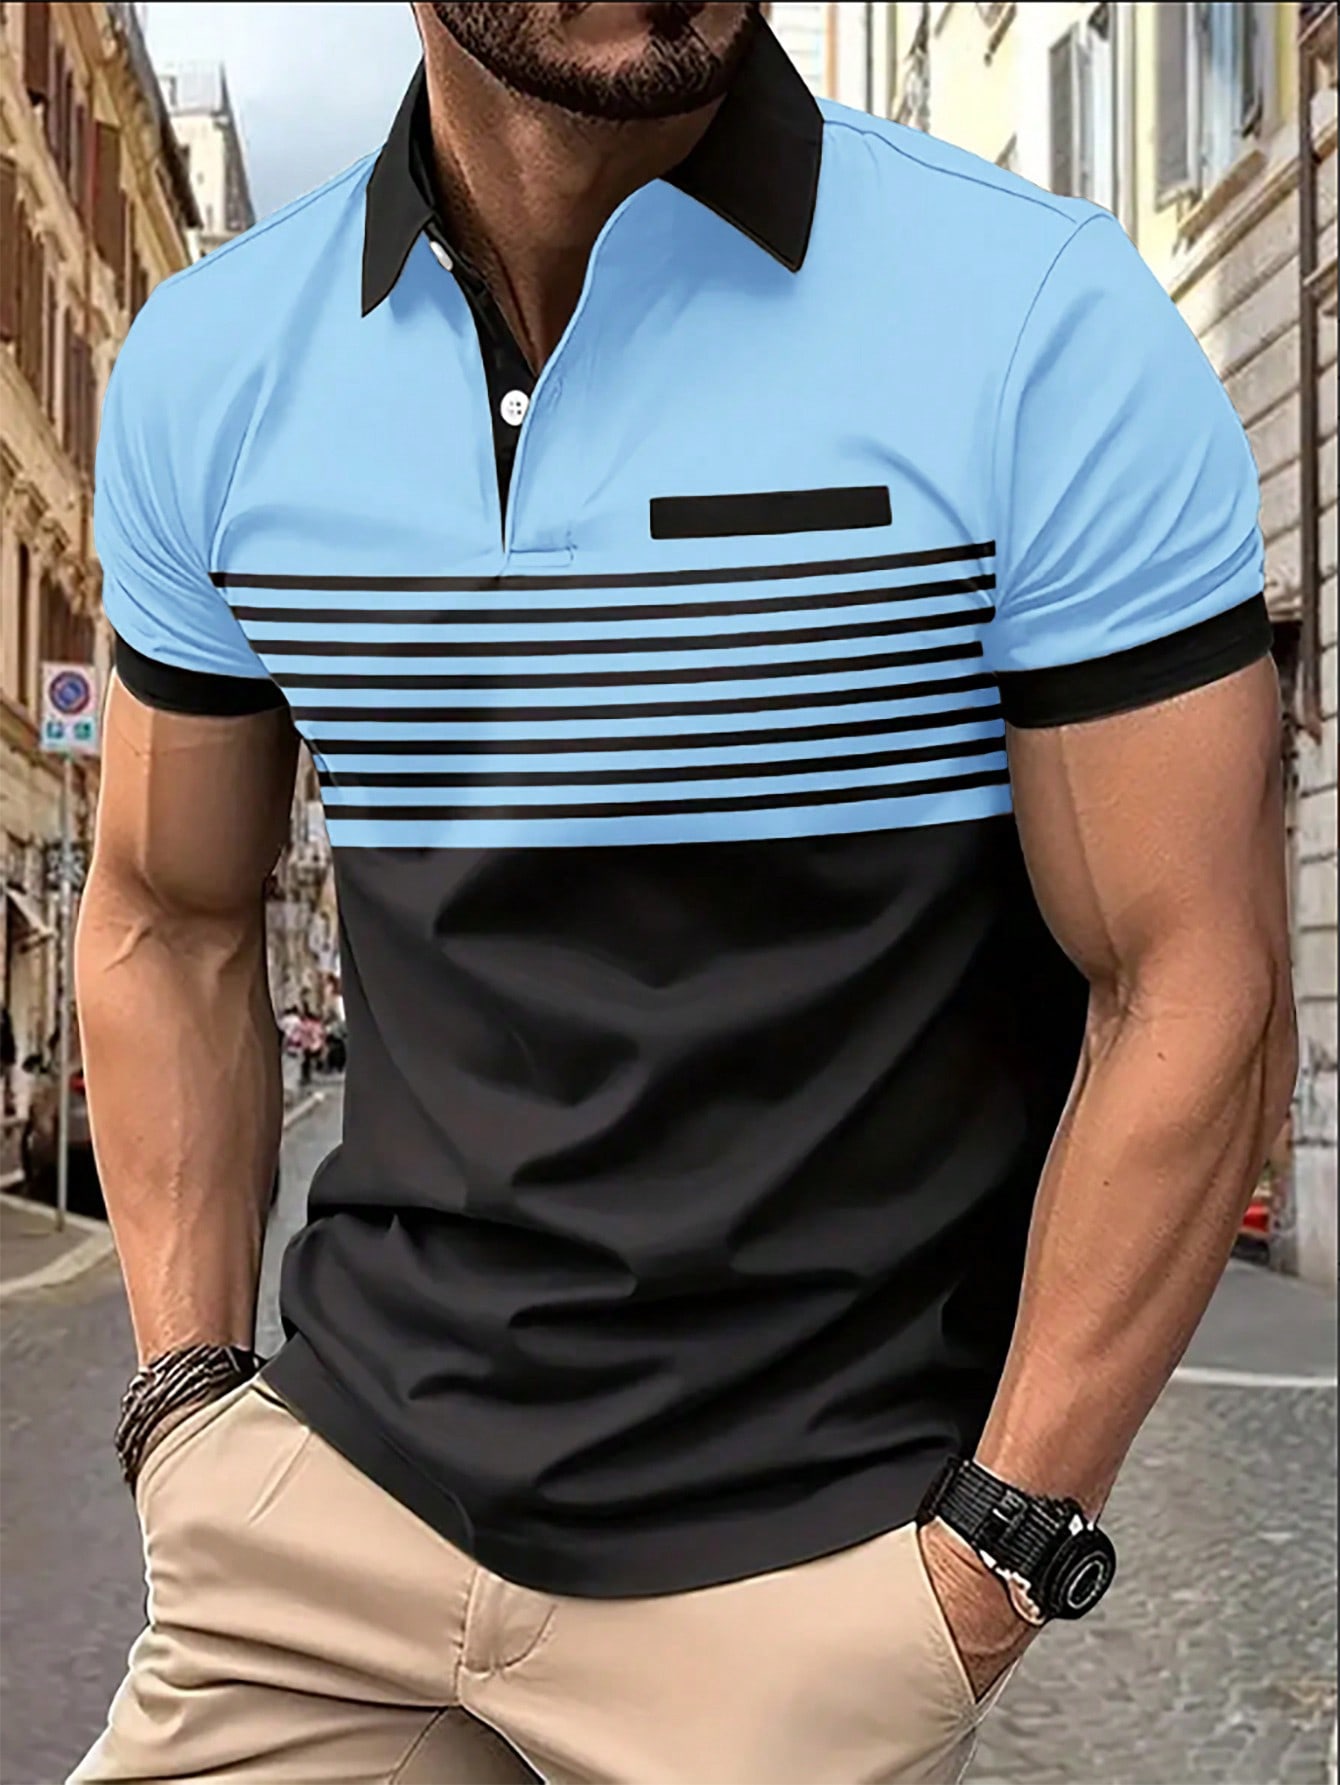 Мужская рубашка-поло контрастного цвета Manfinity Homme, голубые рубашка мужская из ткани оксфорд с коротким рукавом в полоску 100% хлопок